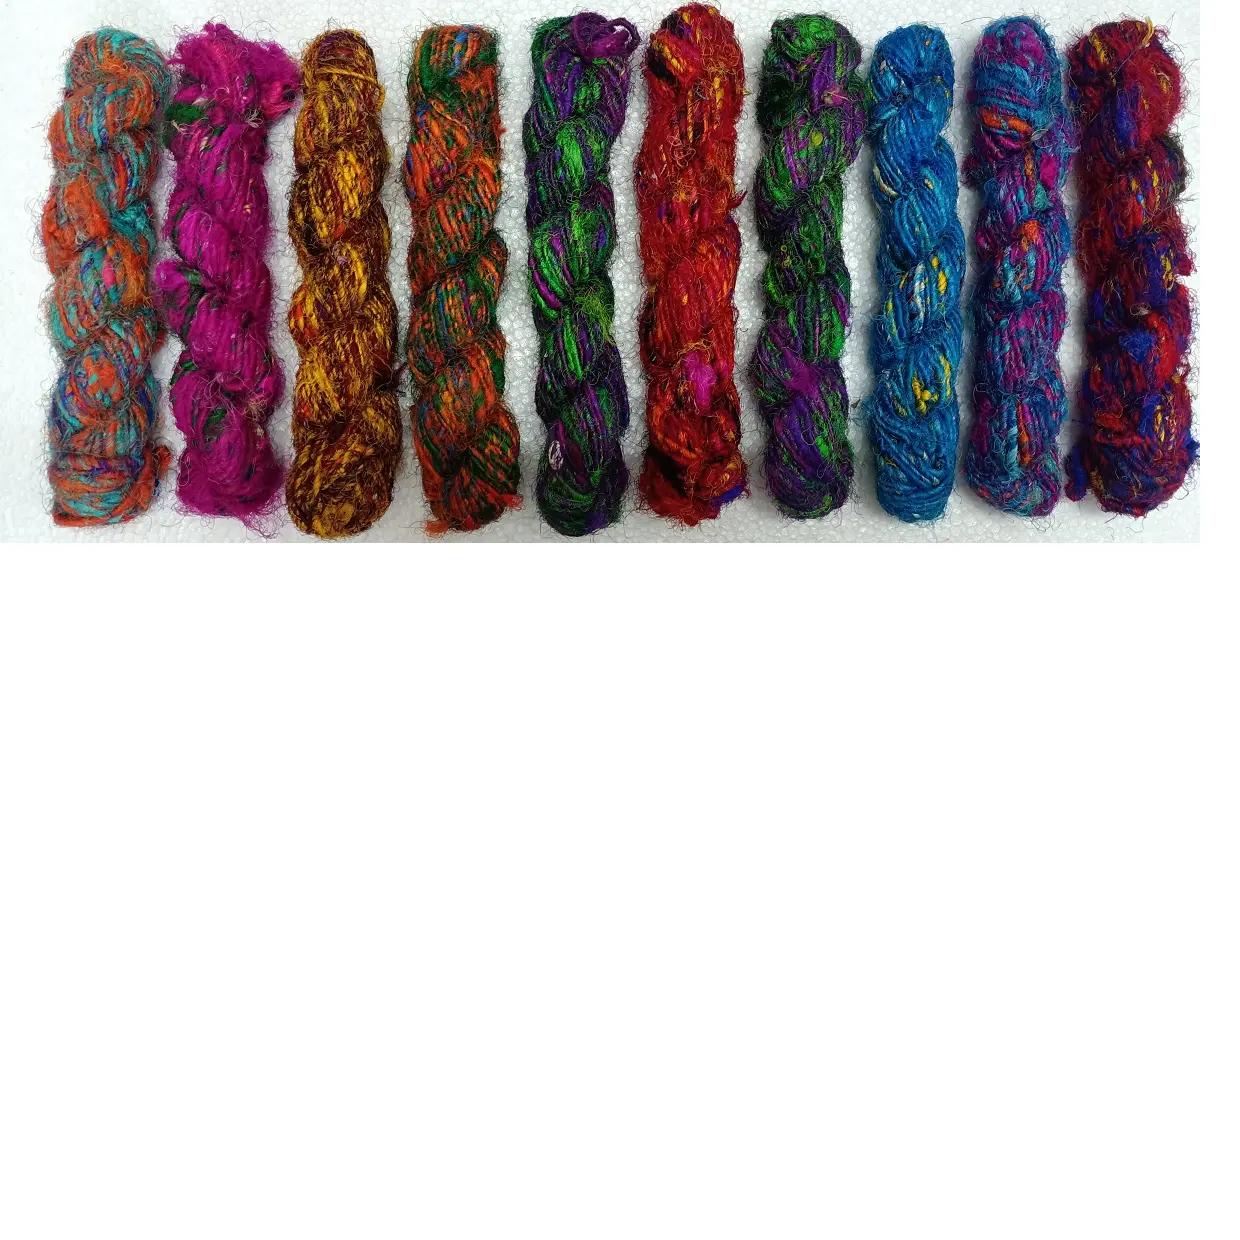 Hilos de seda multicolores, disponible en varios colores, madejas de 100 gramos, ideal para artistas de ganchillo y artistas de fibra